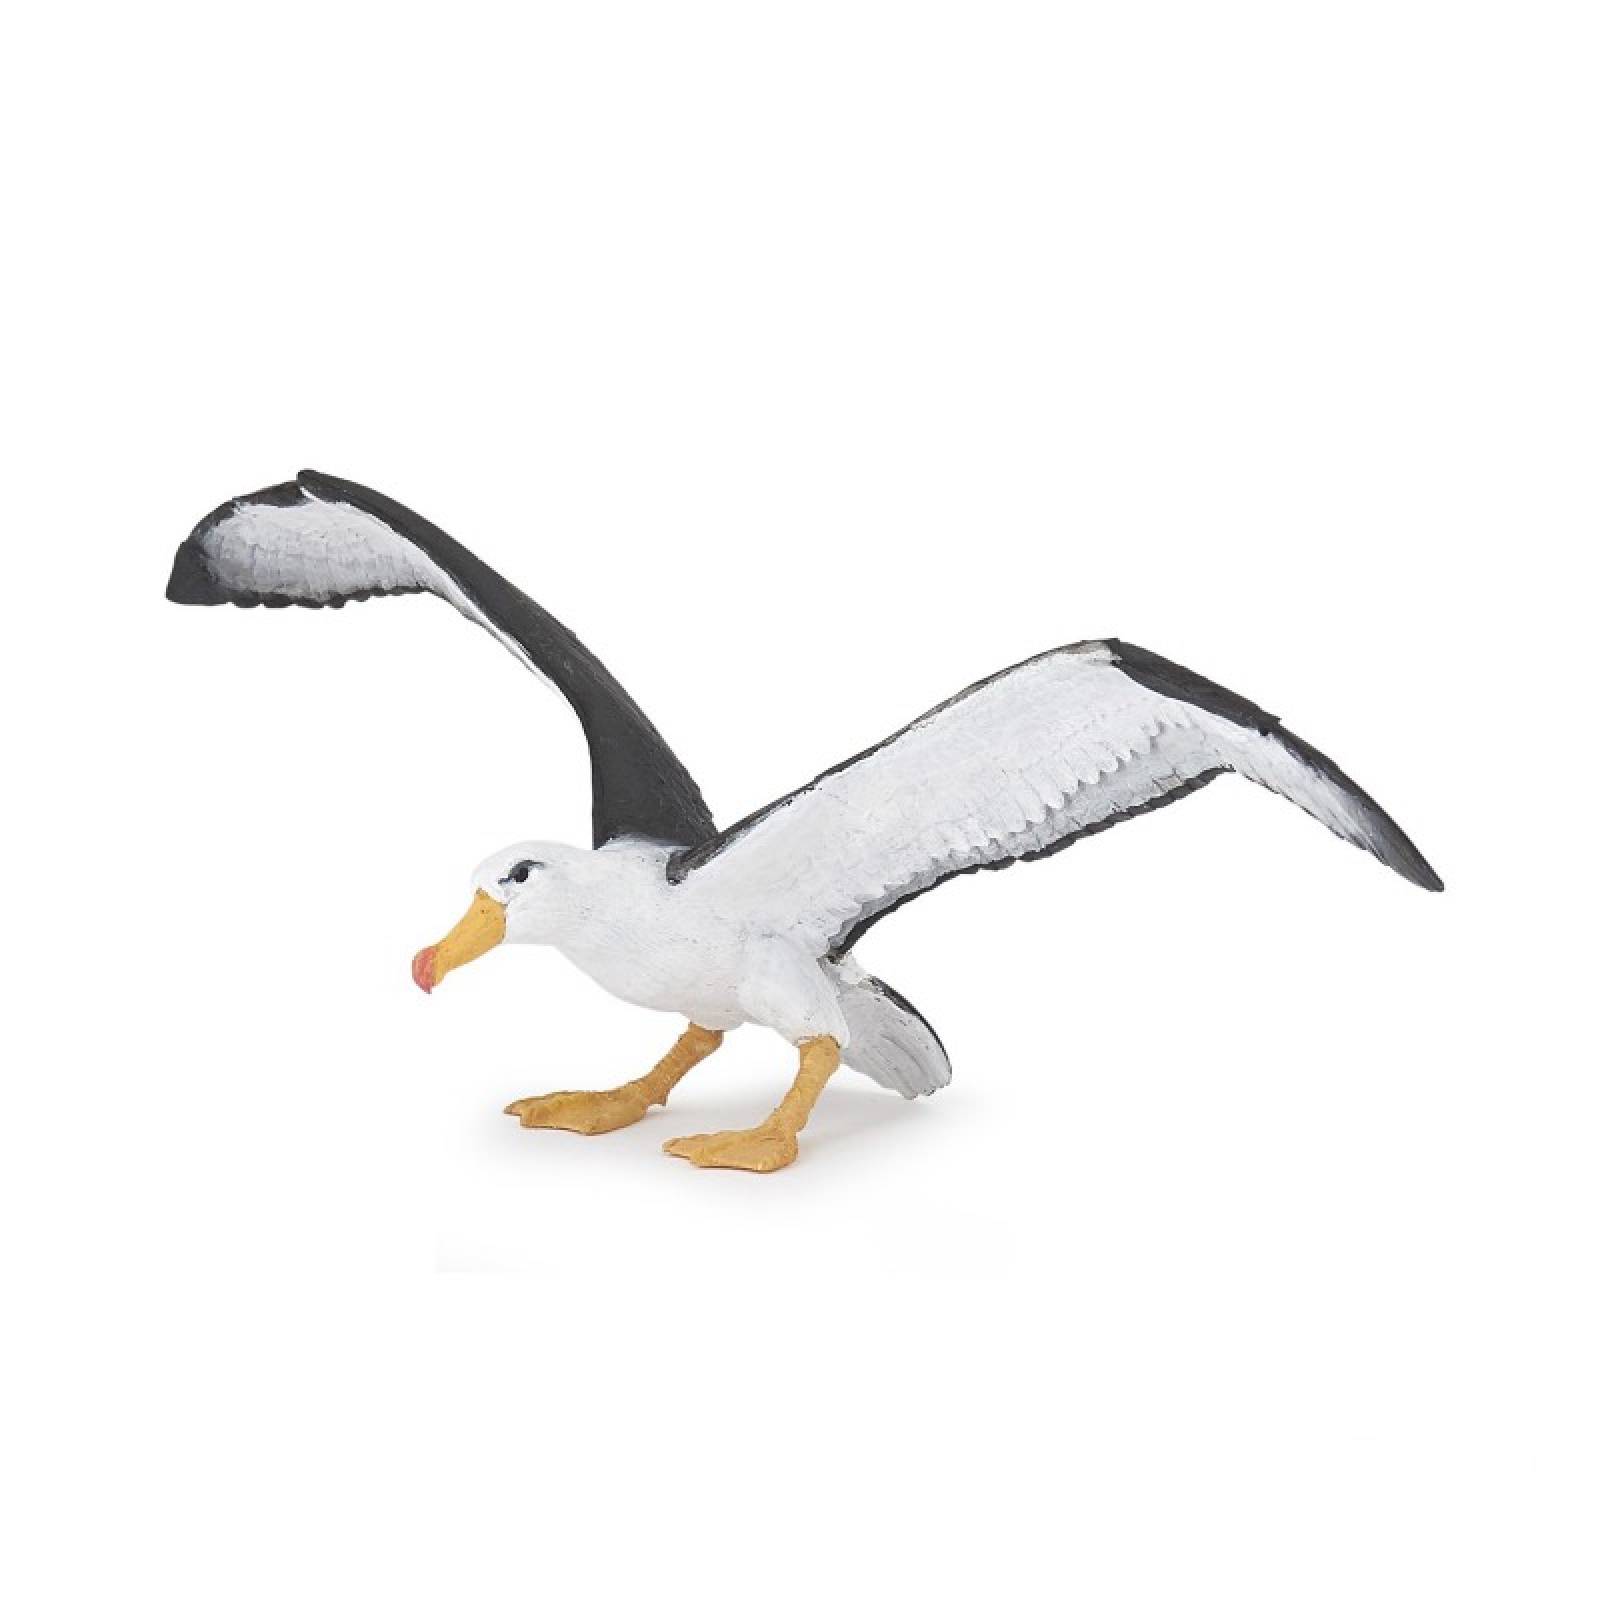 Albatross - Papo Animal Figure